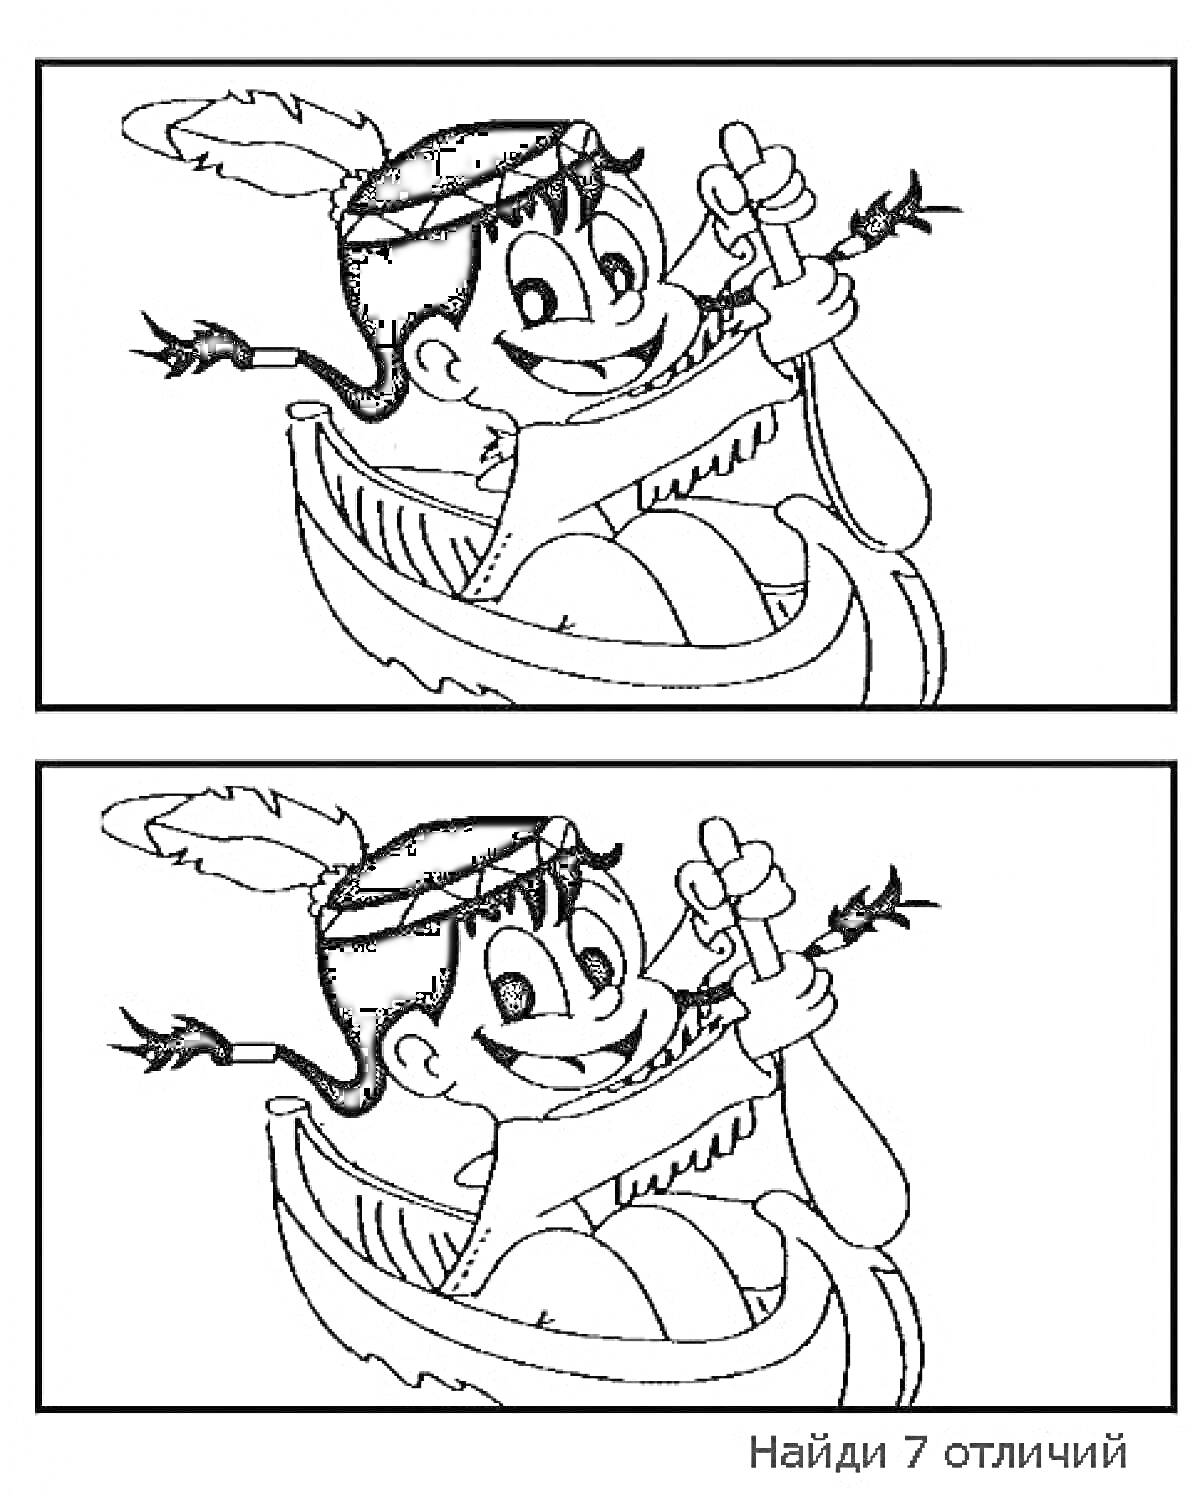 Раскраска Найди отличия: мальчик в лодке с веслом и перьями, семь отличий